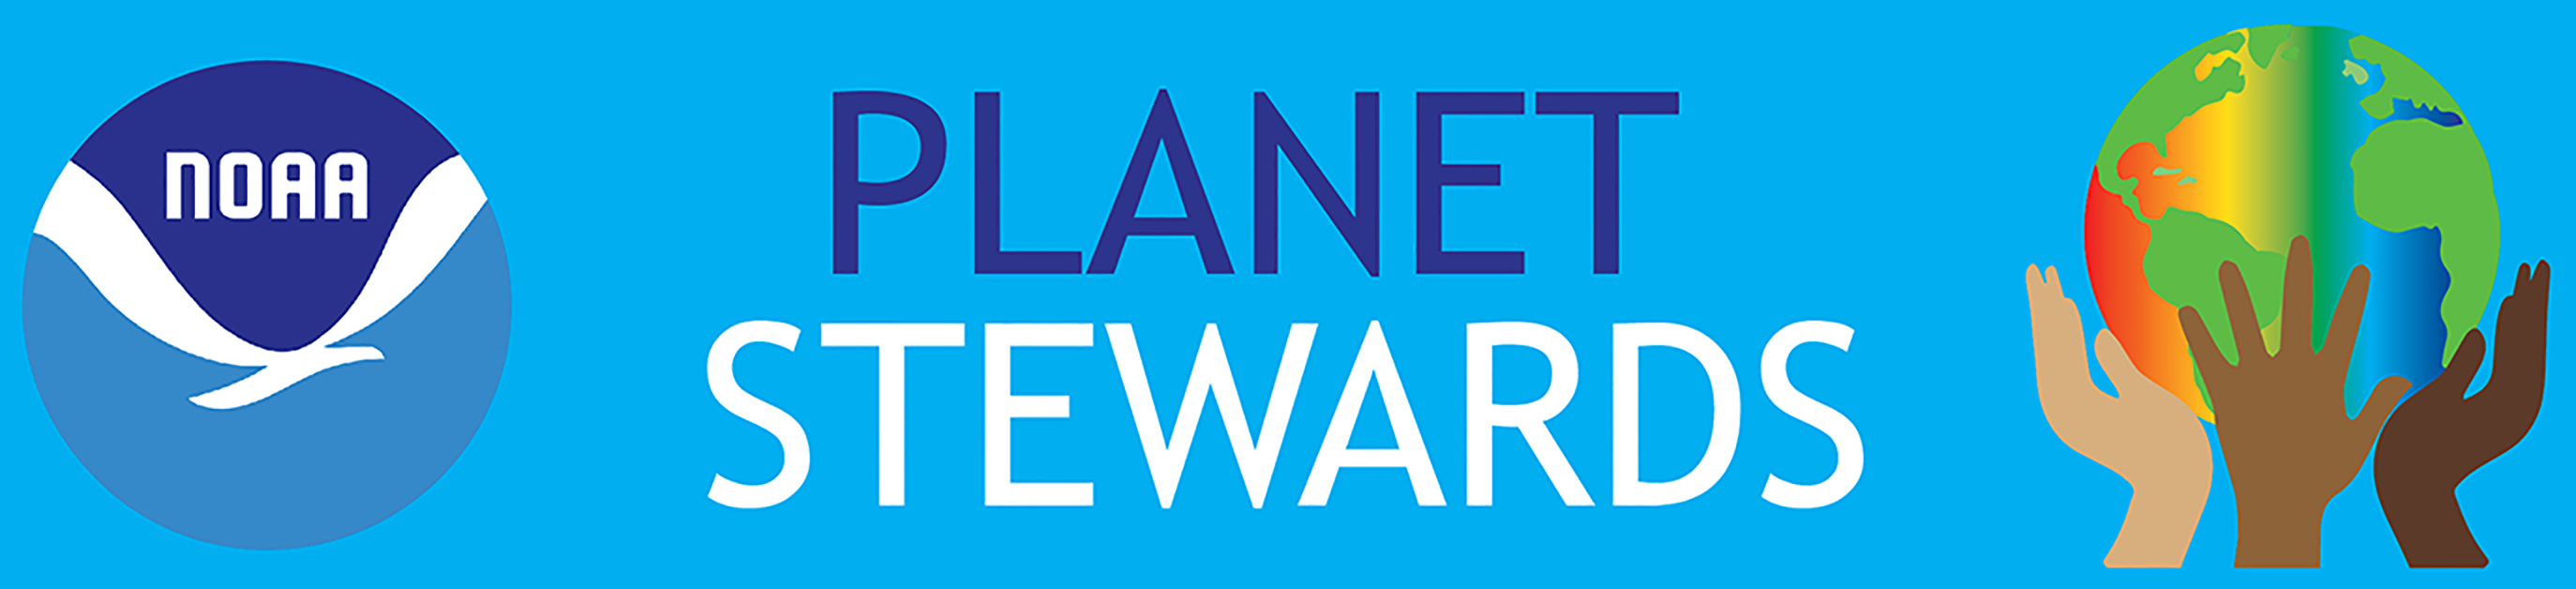 NOAA Planet Stewards Banner